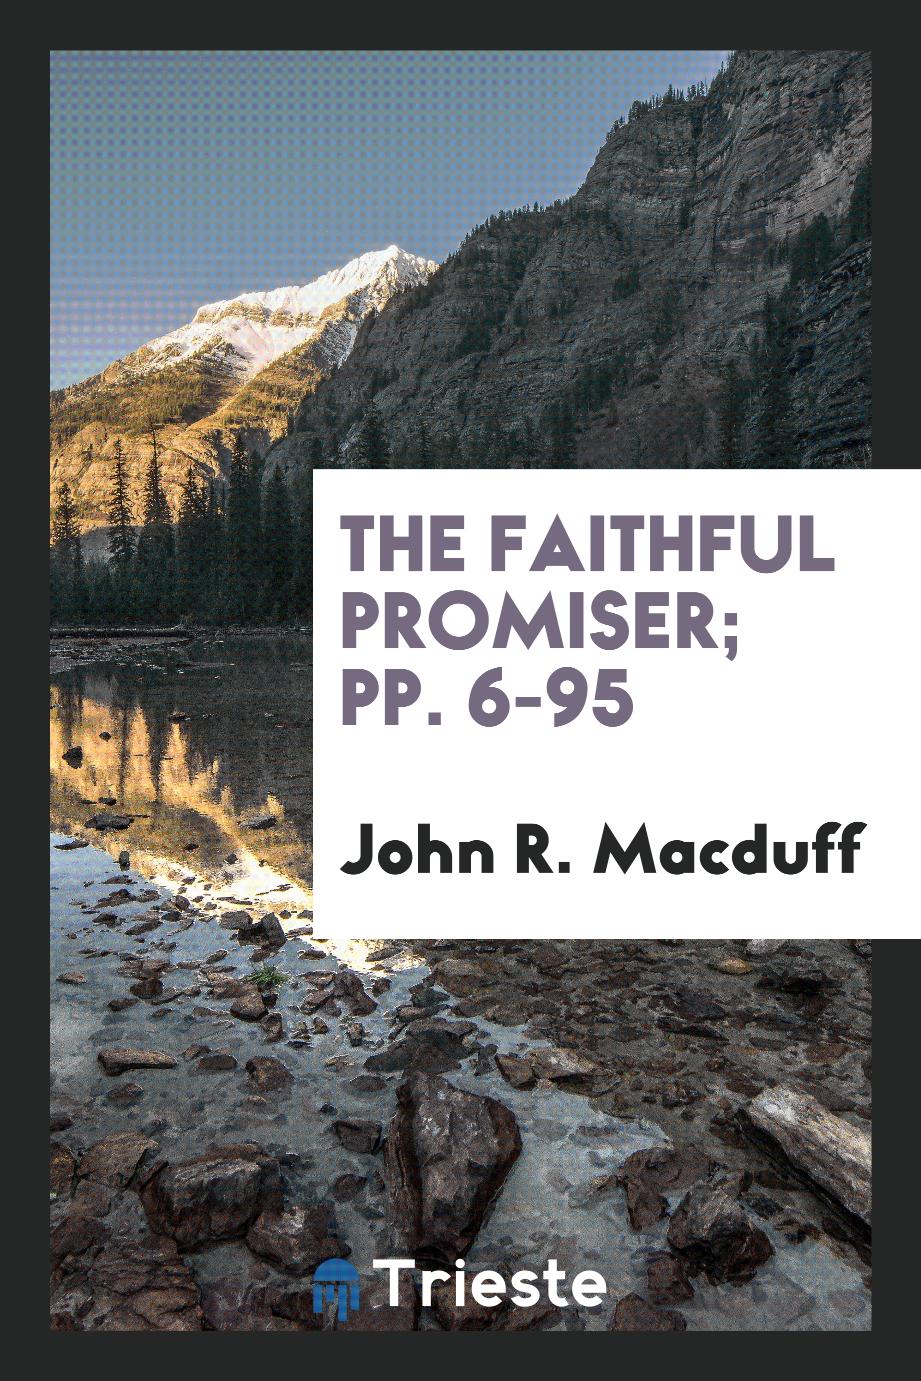 The Faithful Promiser; pp. 6-95